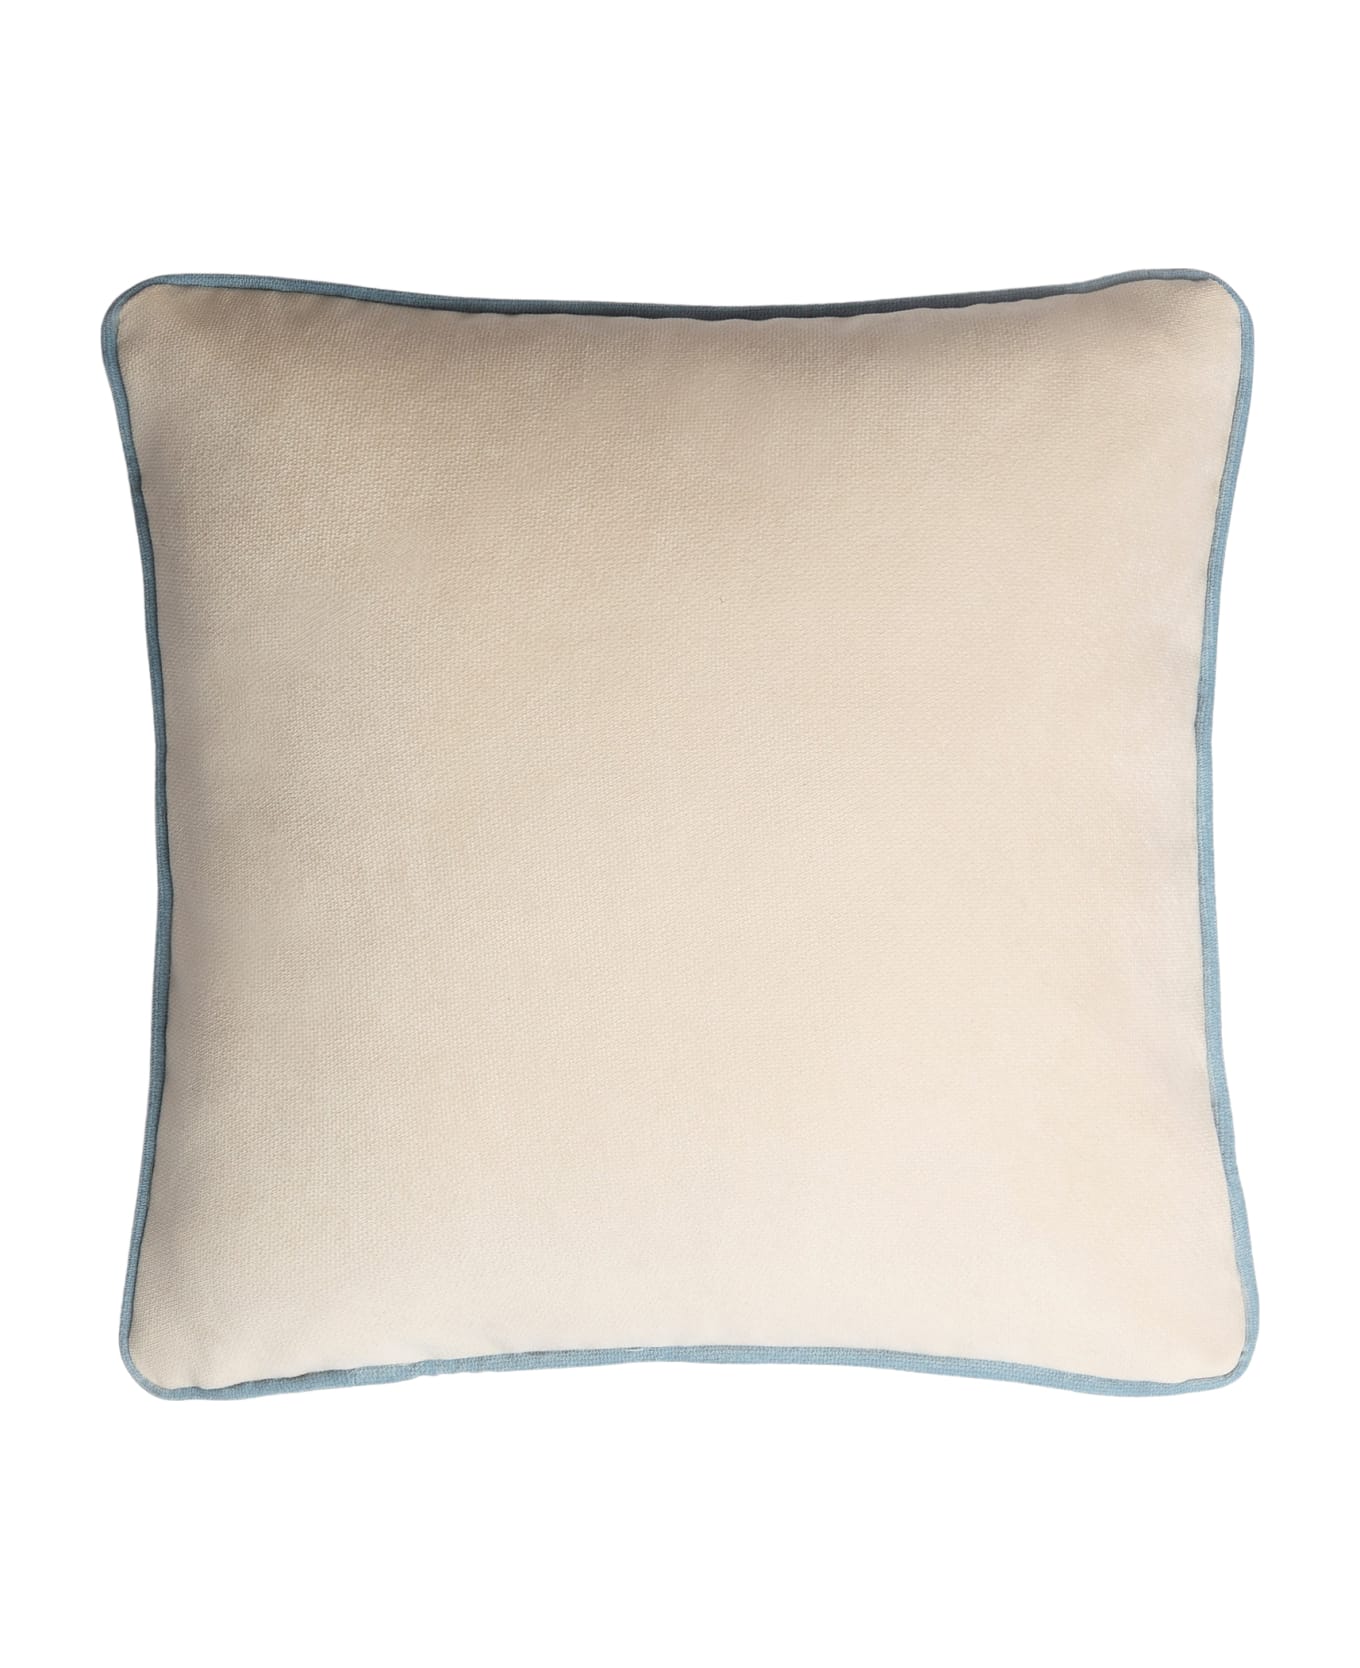 Lo Decor Happy Frame Velvet Pillow - Dirty white/light blue